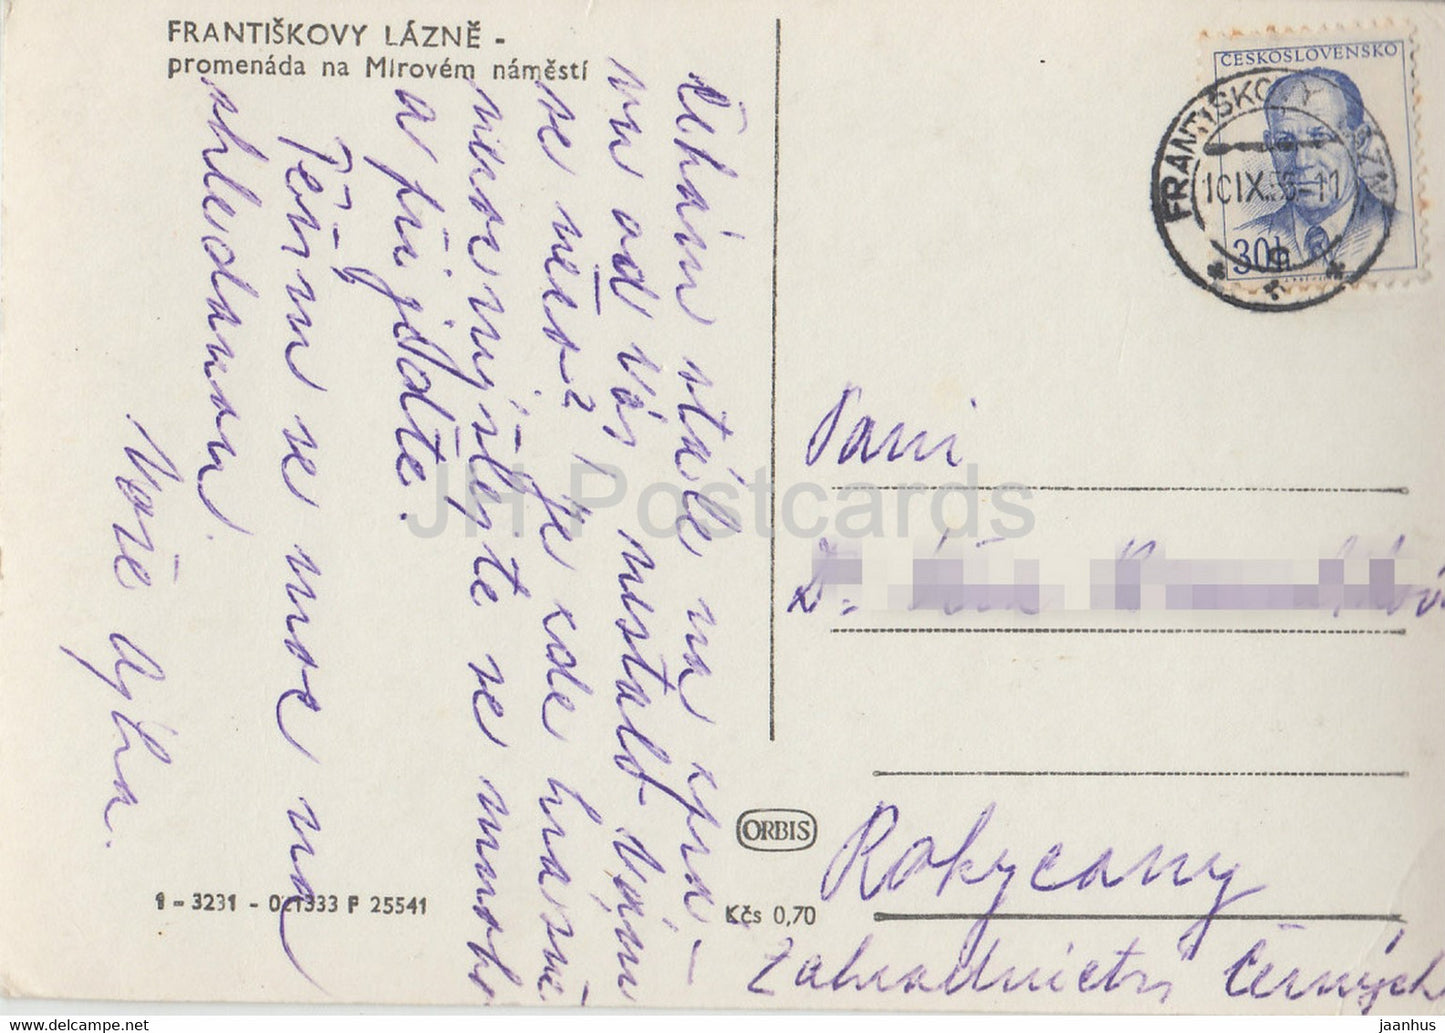 Frantiskovy Lazne - promenada na Mirovem namesti - 1955 - carte postale ancienne - République tchèque - Tchécoslovaquie - utilisé